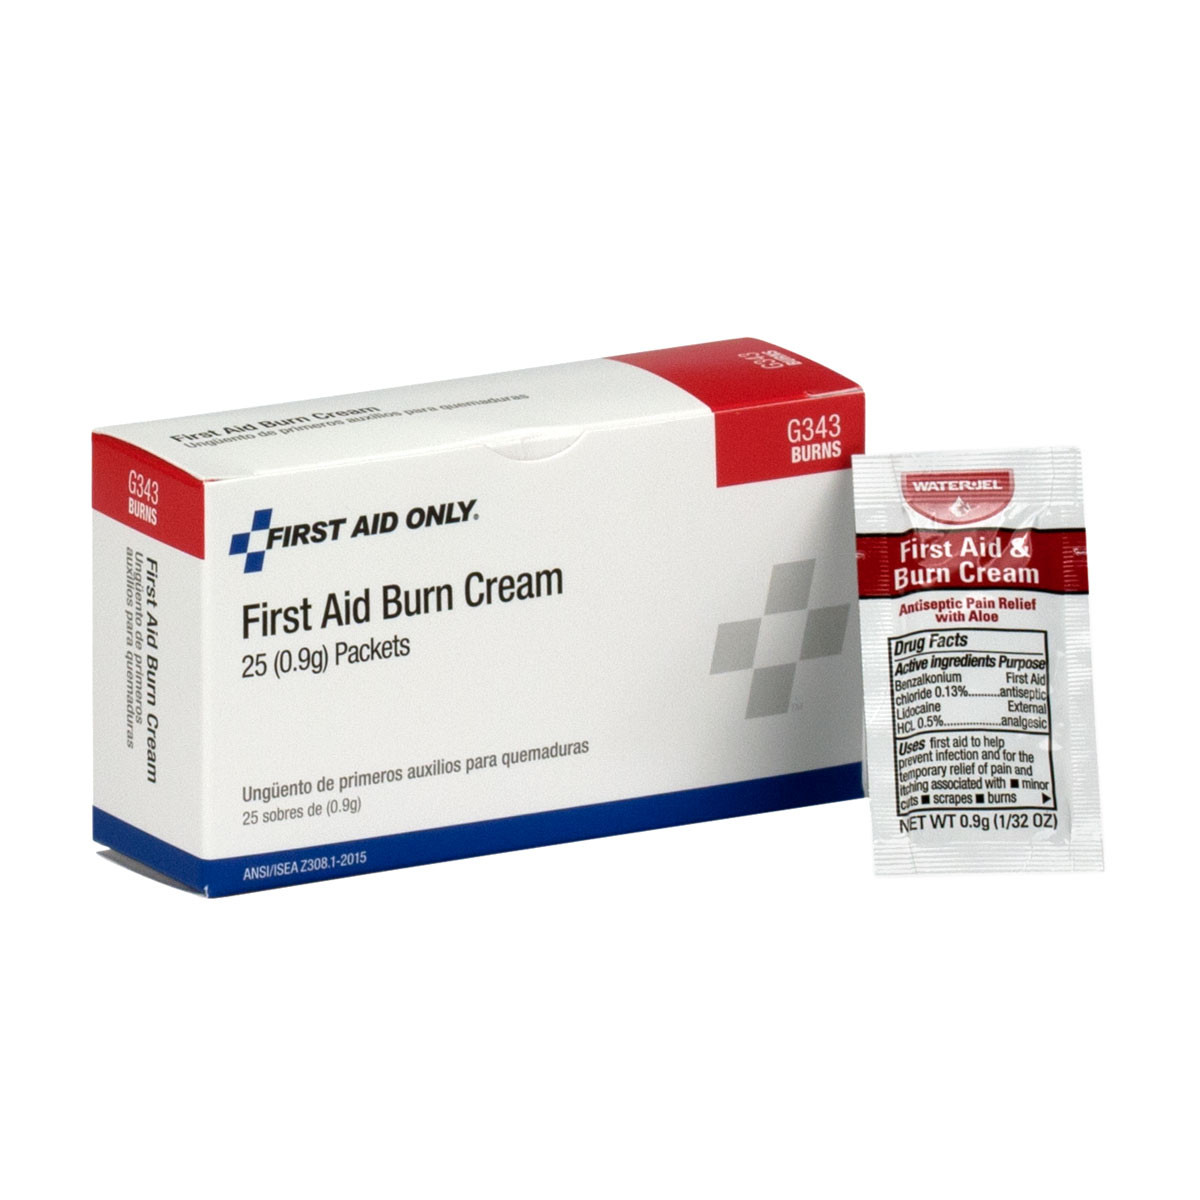 First Aid Burn Cream (0.9g) Packet Each Packets